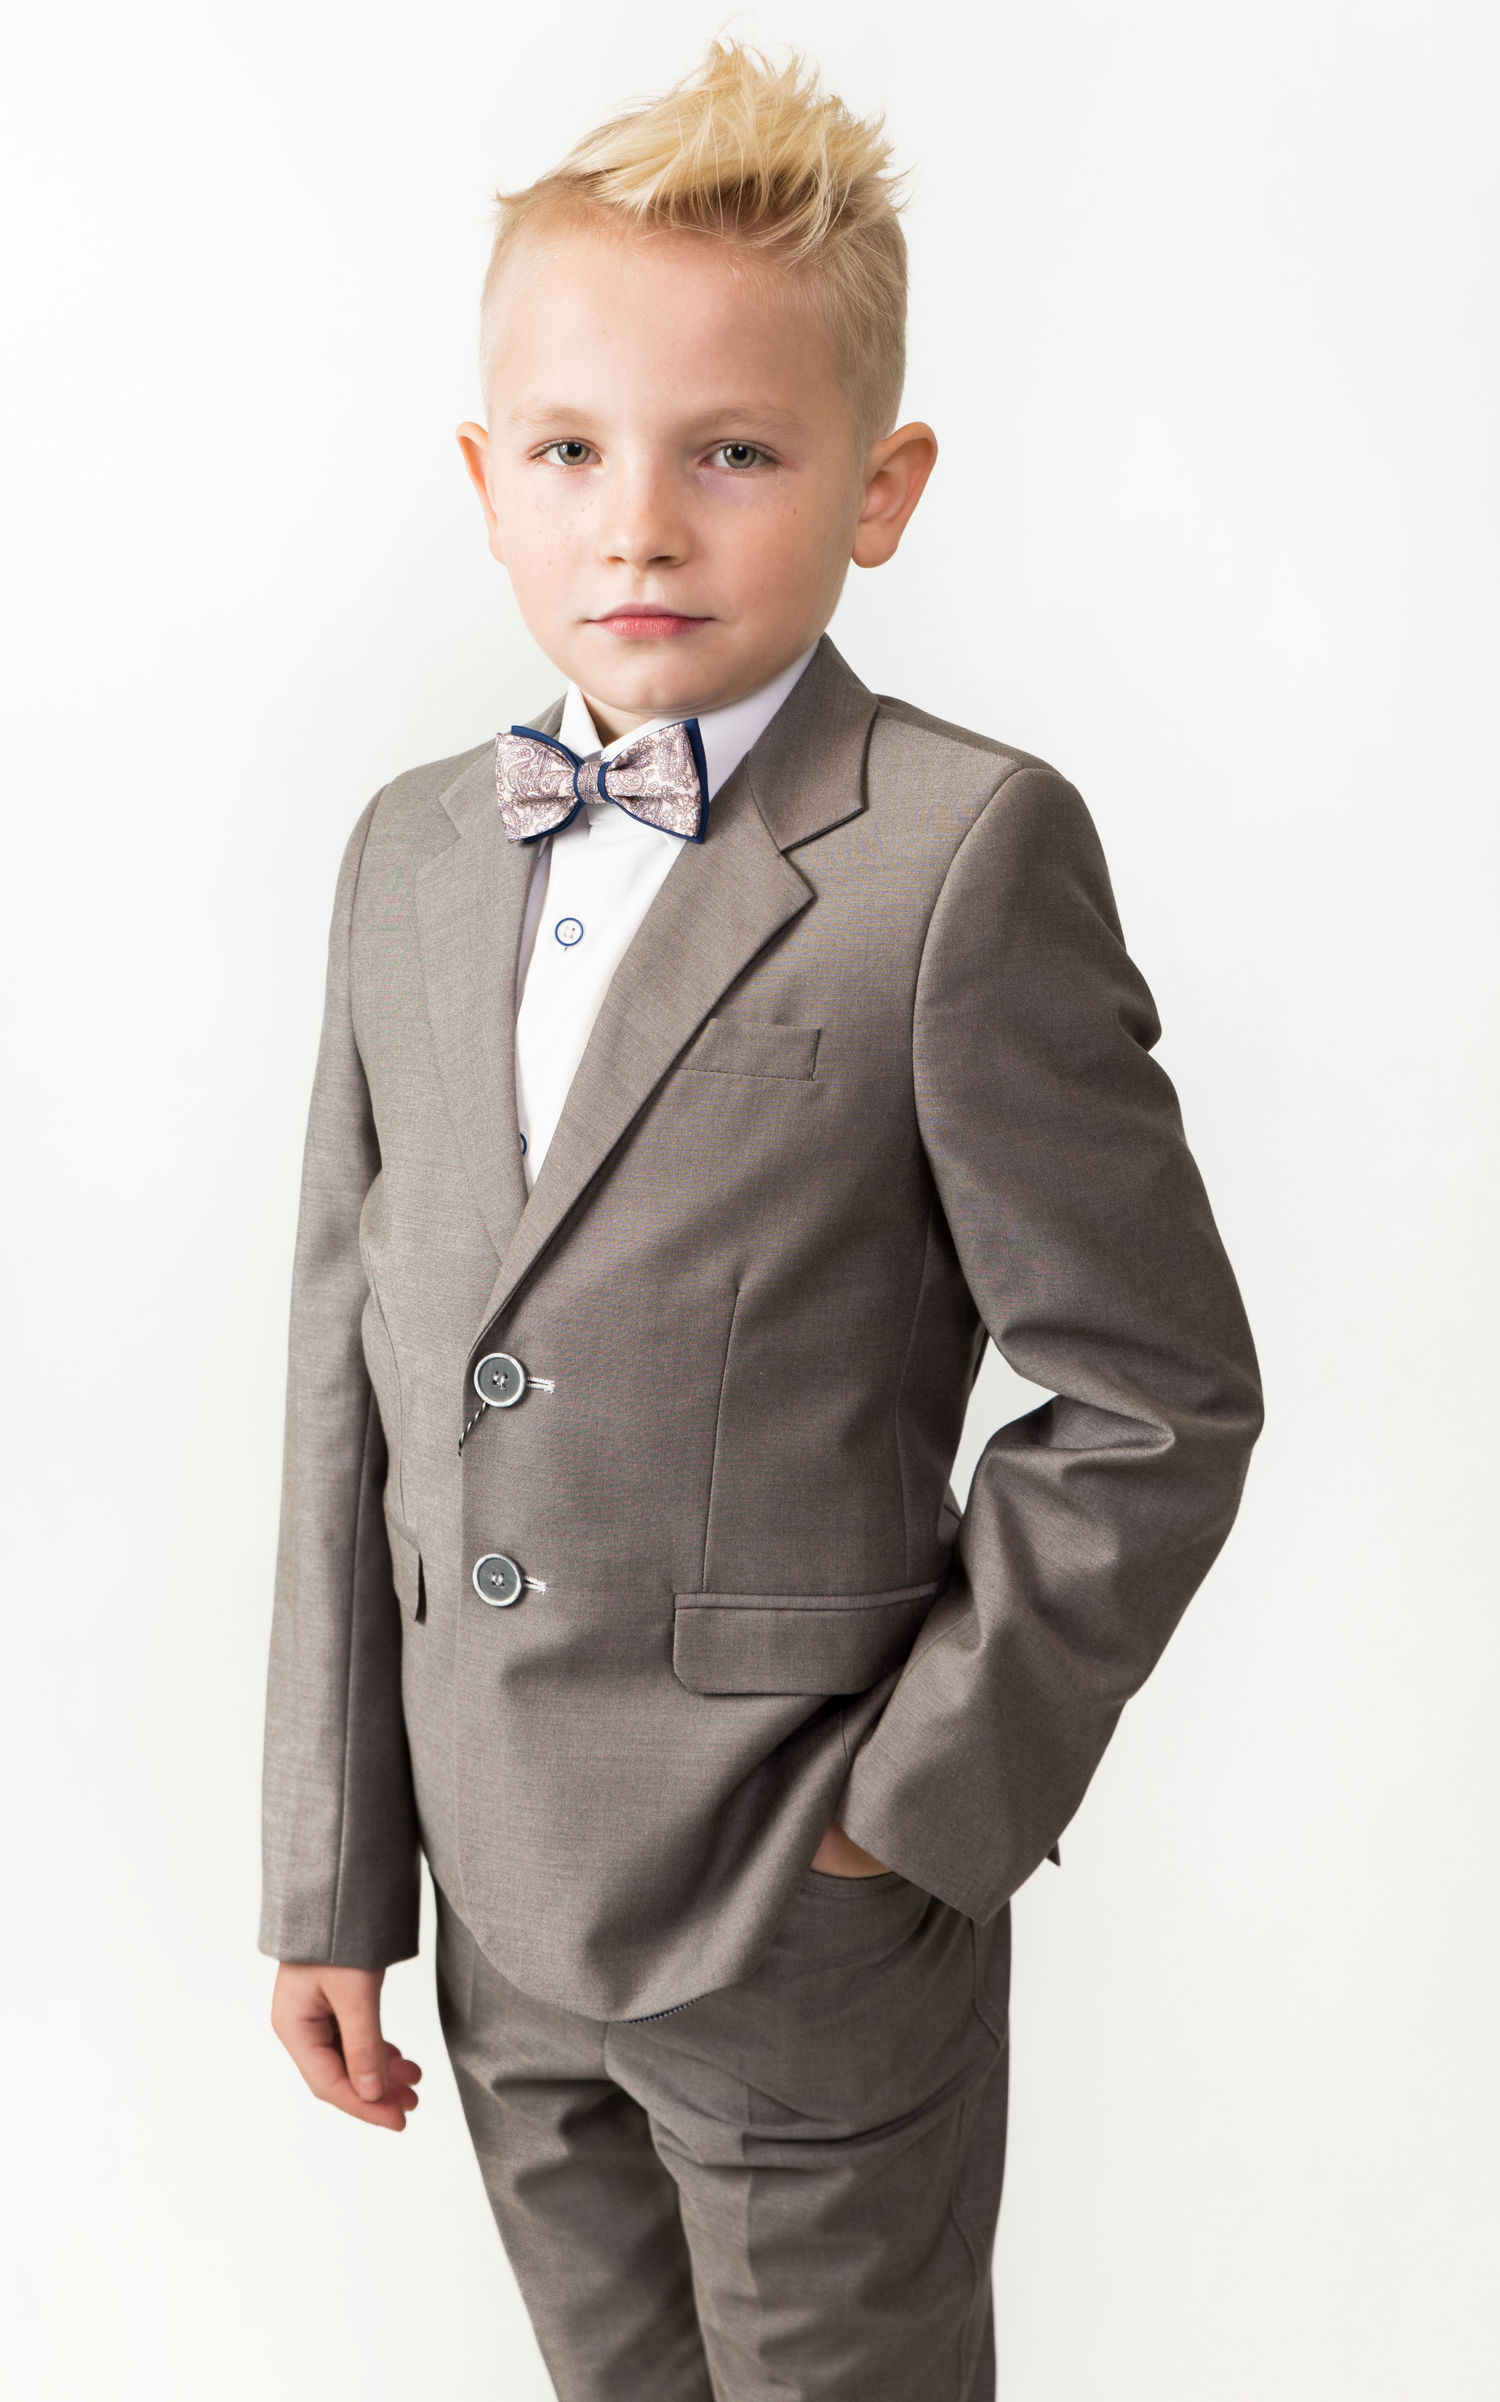 Communion suit for a boy, beige, slim - Boy's suits - Product - semina.pl